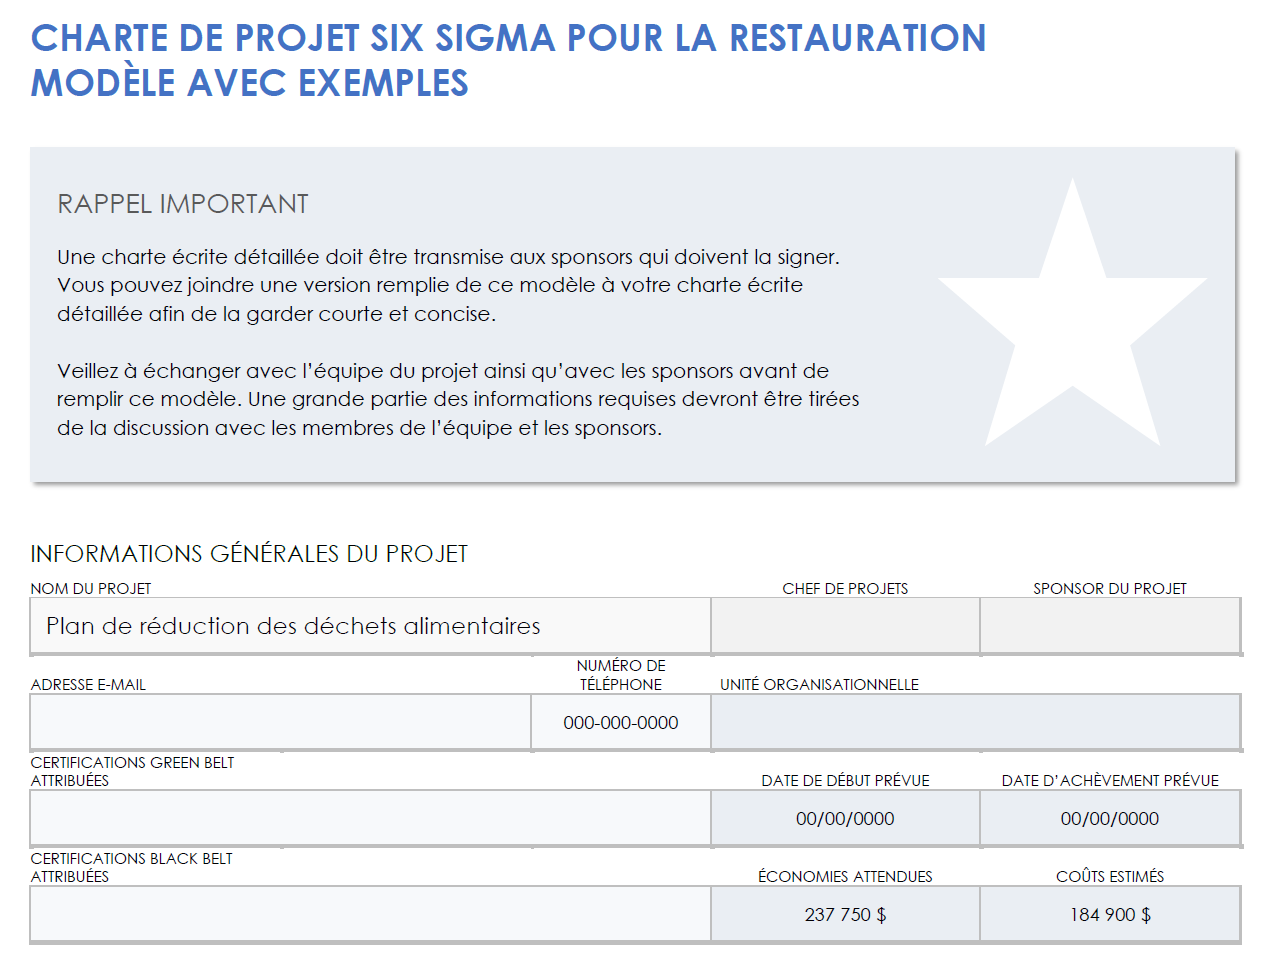 Exemple de charte de projet six sigma pour un restaurant